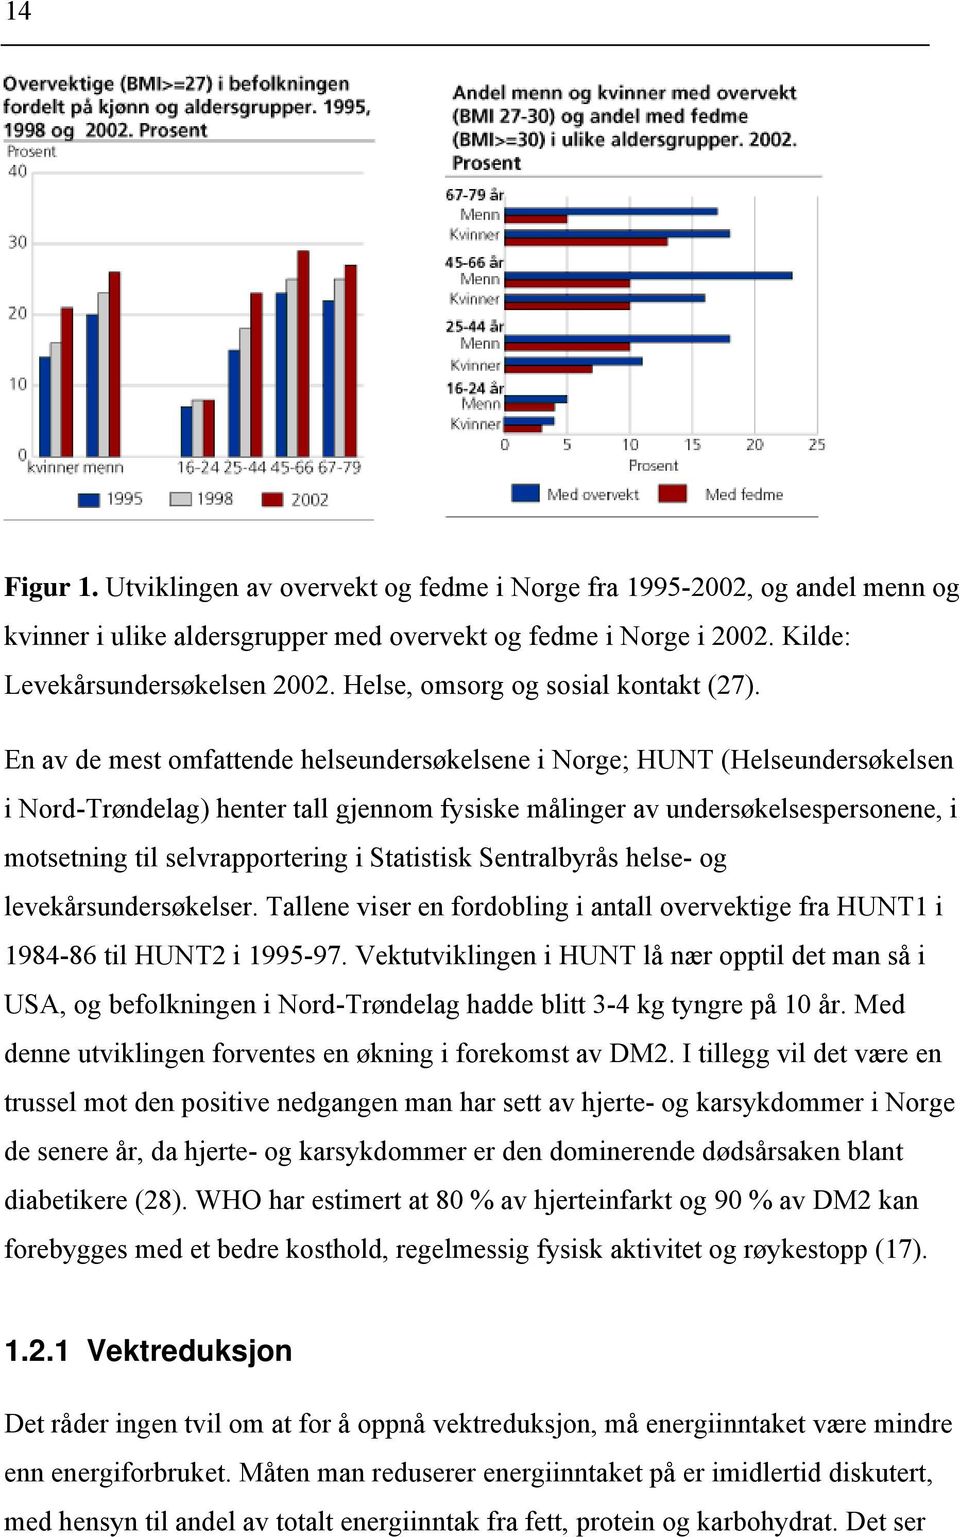 En av de mest omfattende helseundersøkelsene i Norge; HUNT (Helseundersøkelsen i Nord-Trøndelag) henter tall gjennom fysiske målinger av undersøkelsespersonene, i motsetning til selvrapportering i